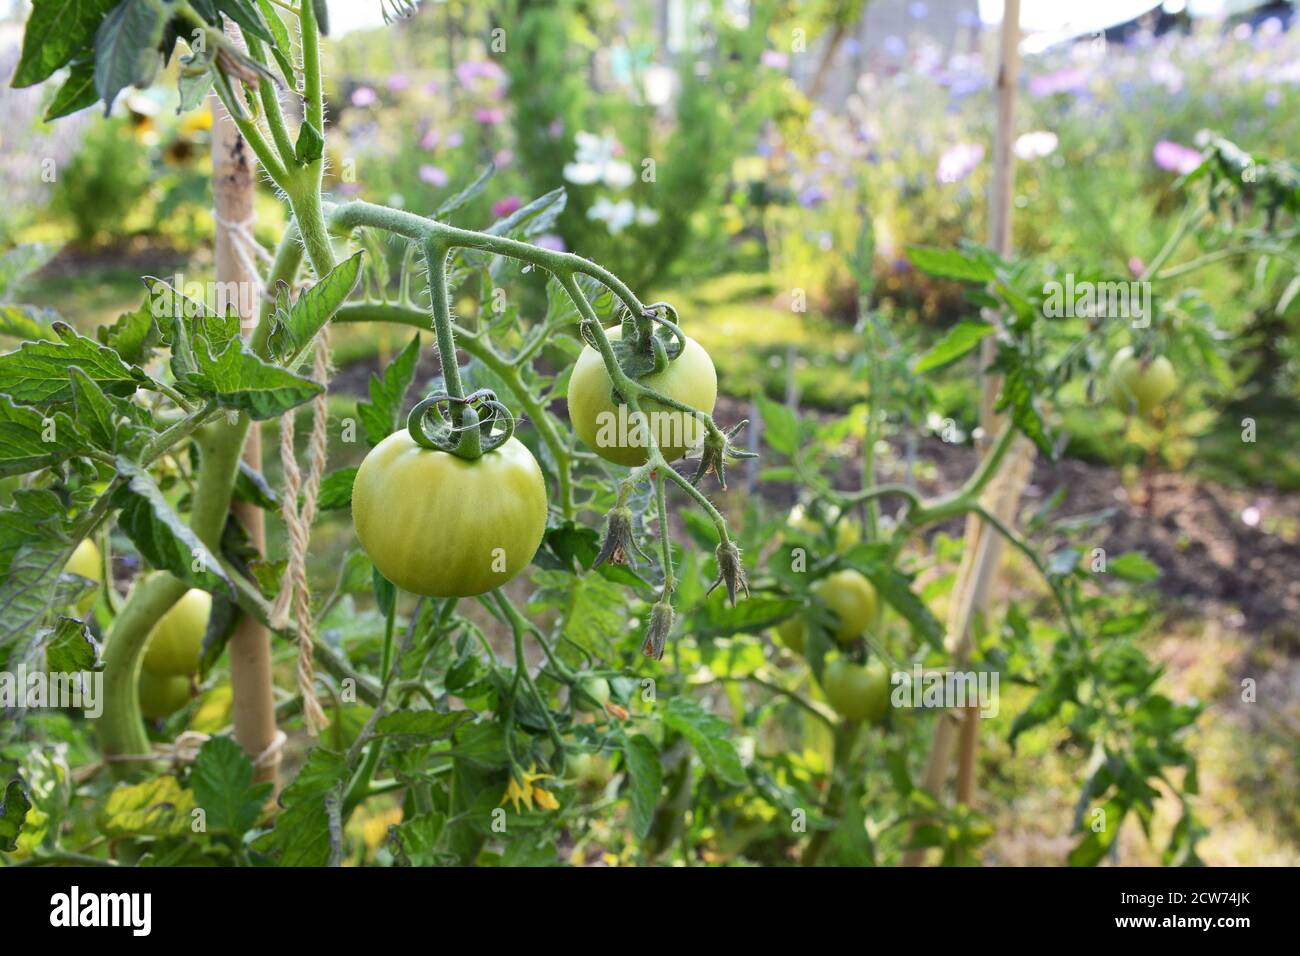 Plante de tomate de cordon Ferline avec des fruits verts, poussant dans un jardin de légumes d'été luxuriant. Solanum lycopersicum L. Banque D'Images